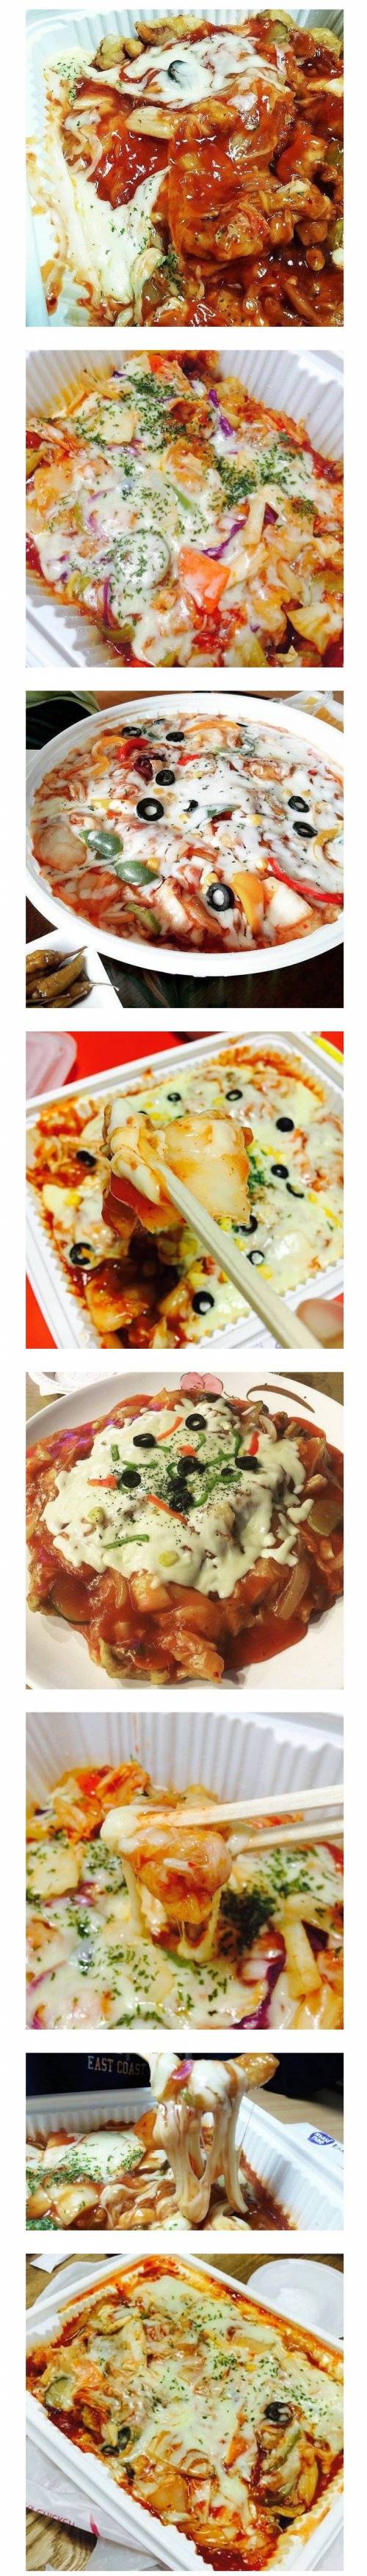 김치 + 피자 + 탕수육.jpg